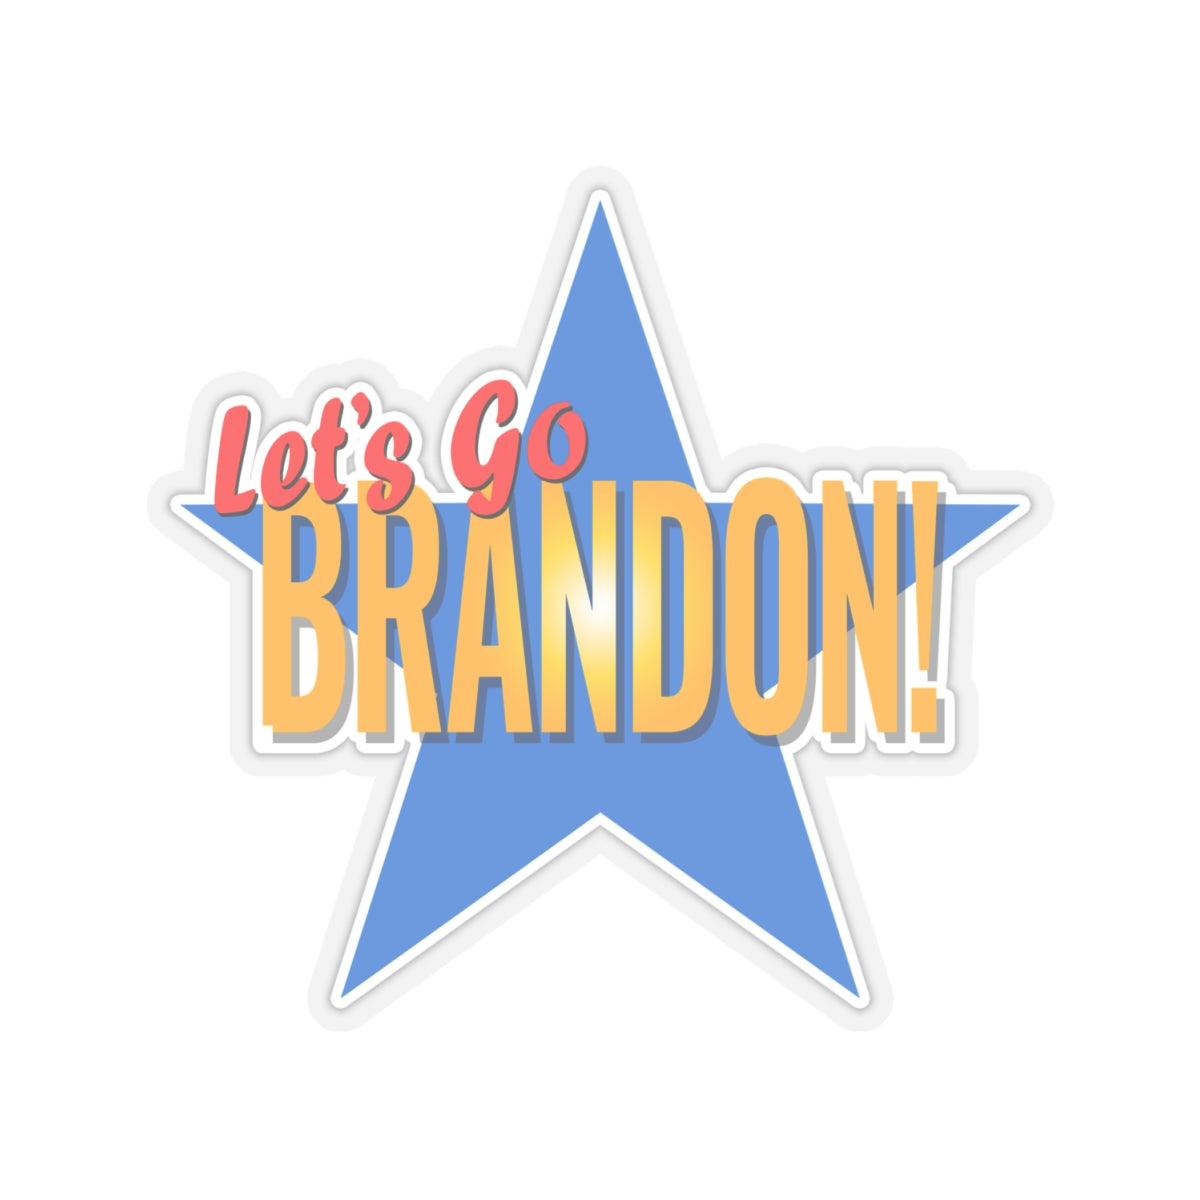 Let's Go Brandon! Kiss-Cut Stickers